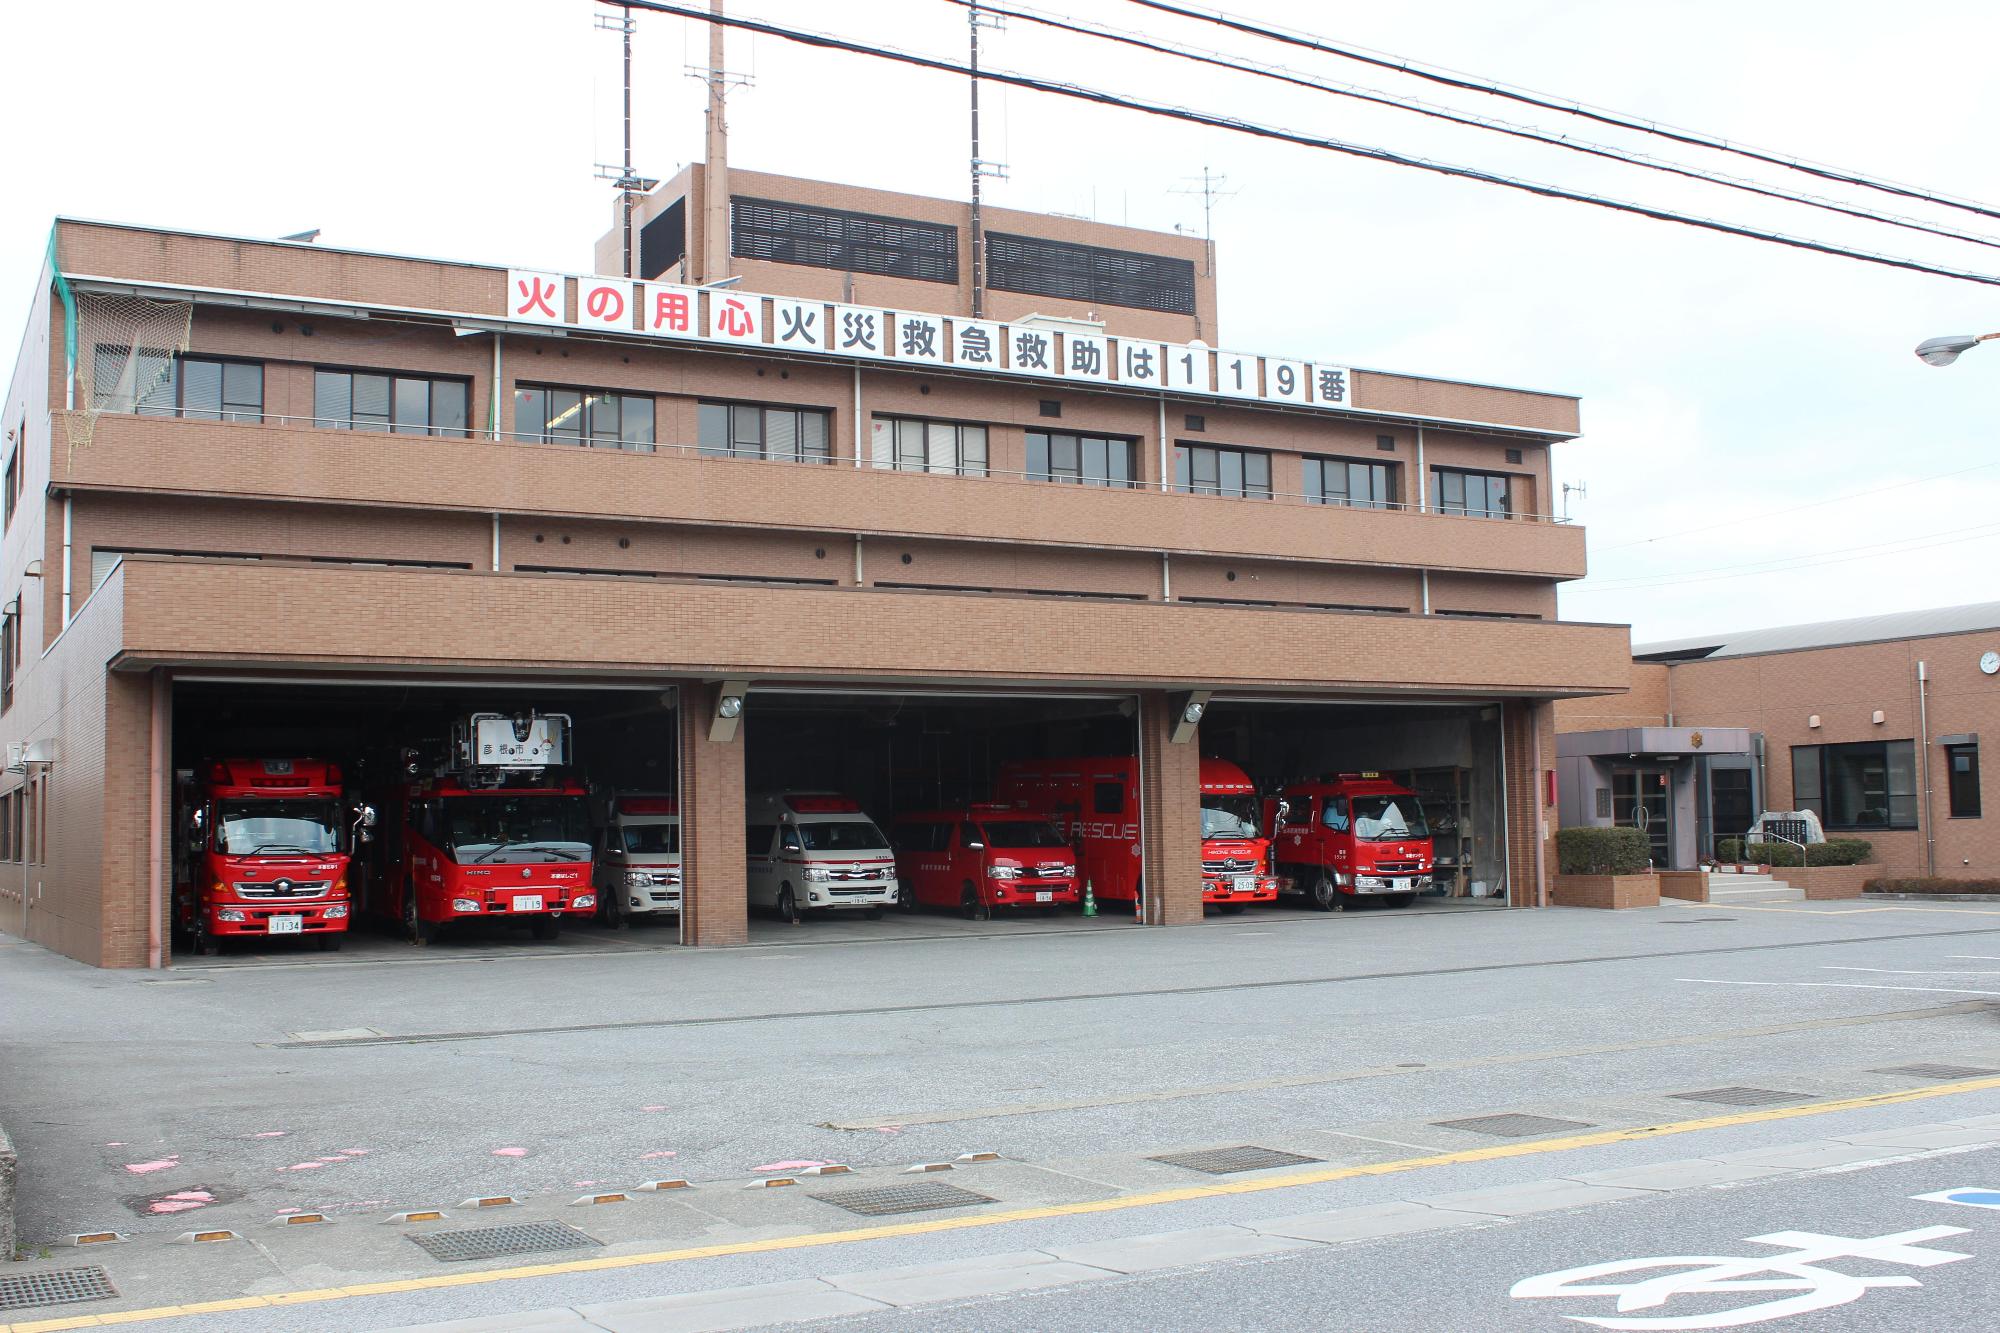 本署の建物と消防車と救急車の写真